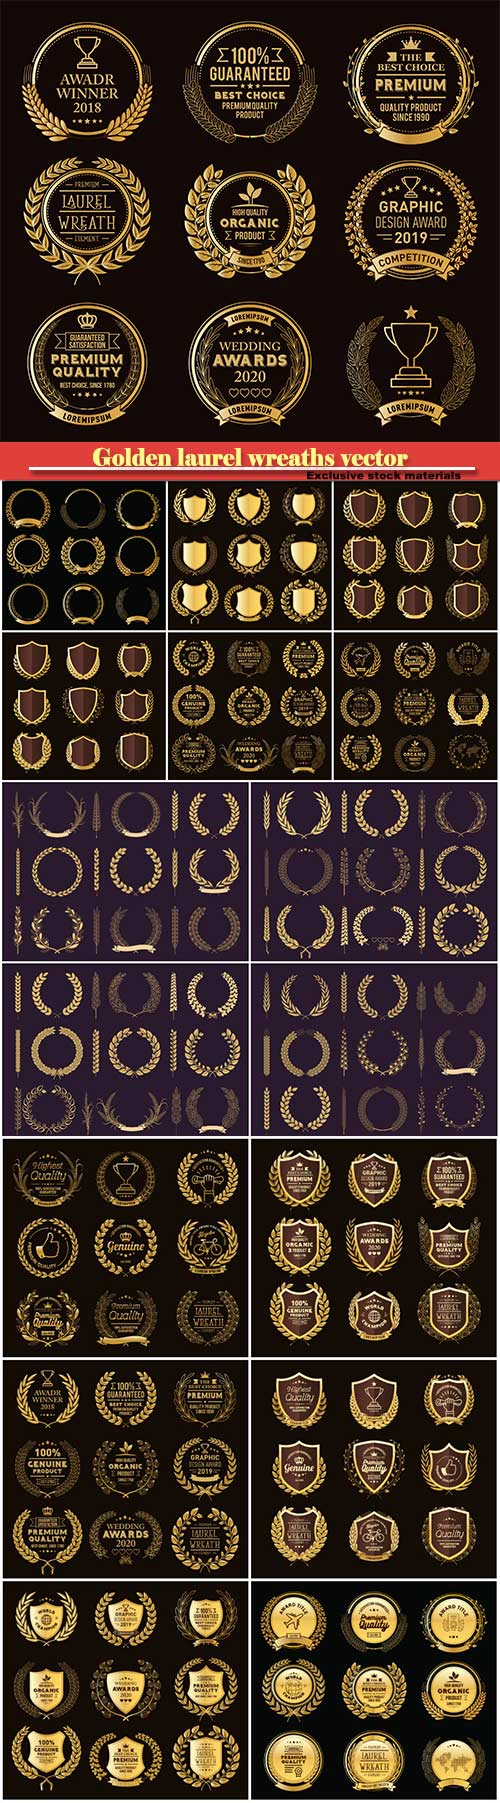 Golden laurel wreaths vector, emblems, logos